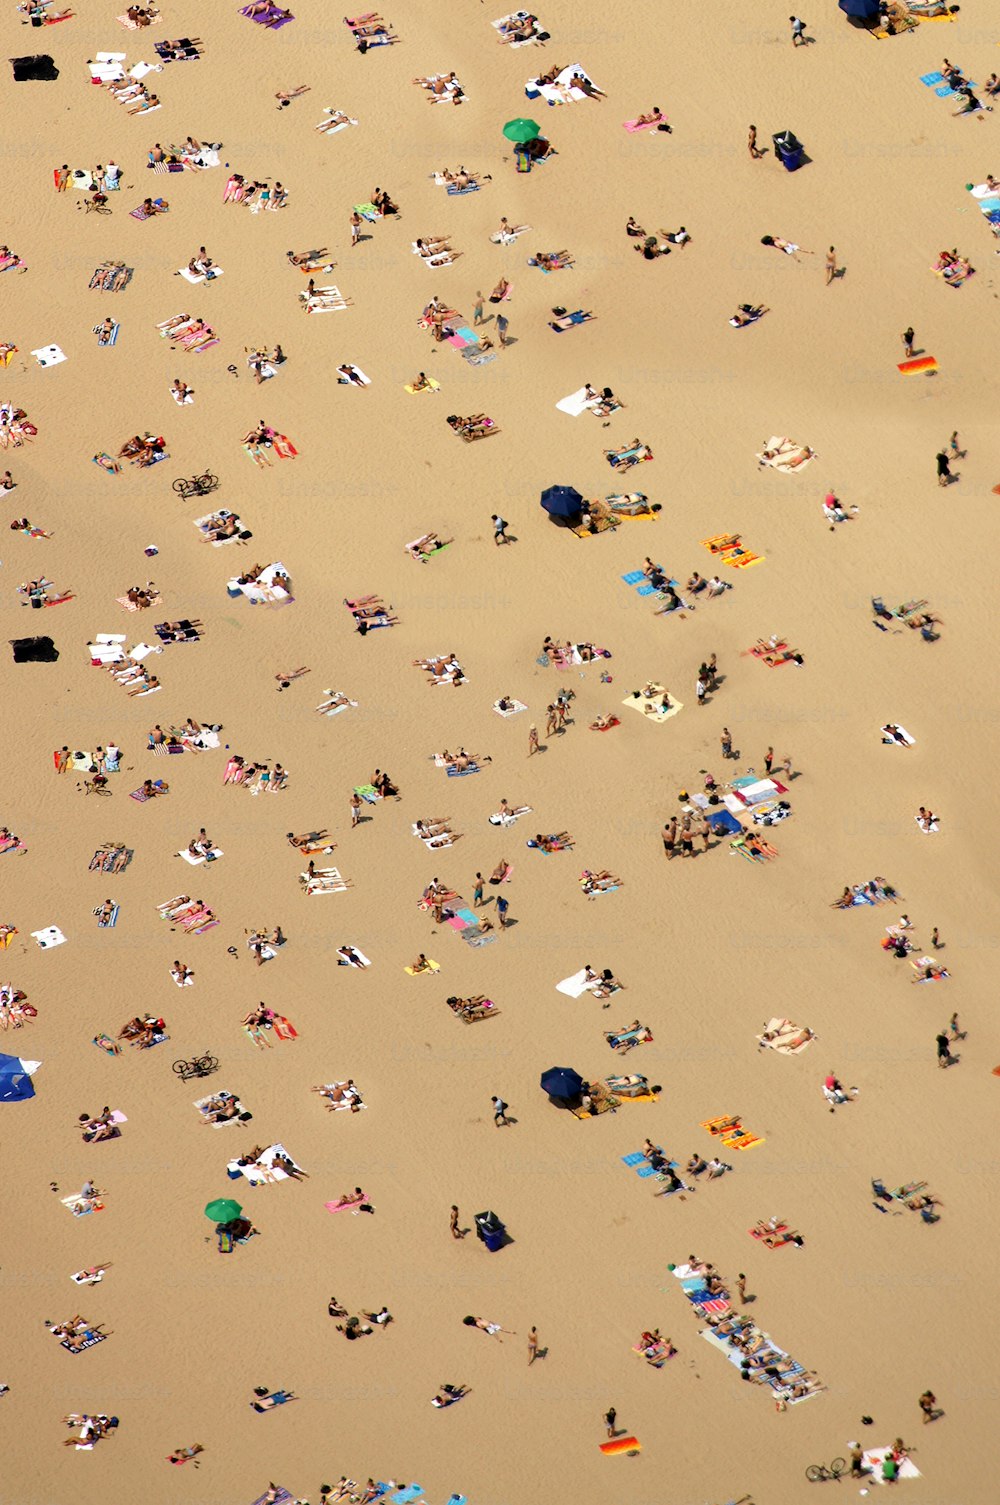 eine große Gruppe von Menschen, die auf einem Sandstrand liegen